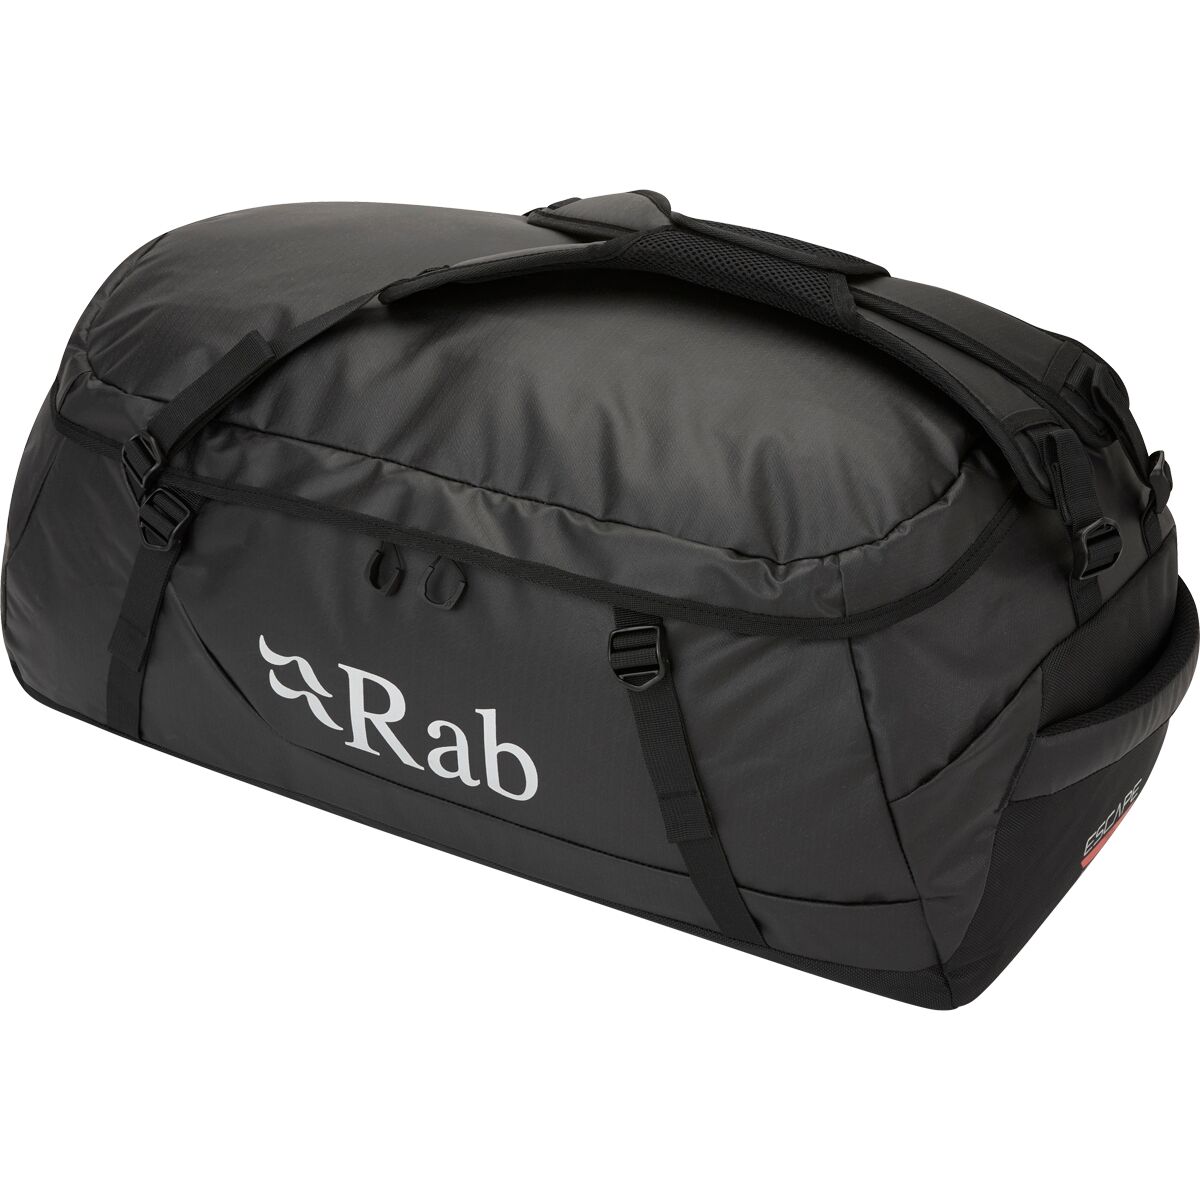 Escape Kit Bag LT 70L Duffle Bag